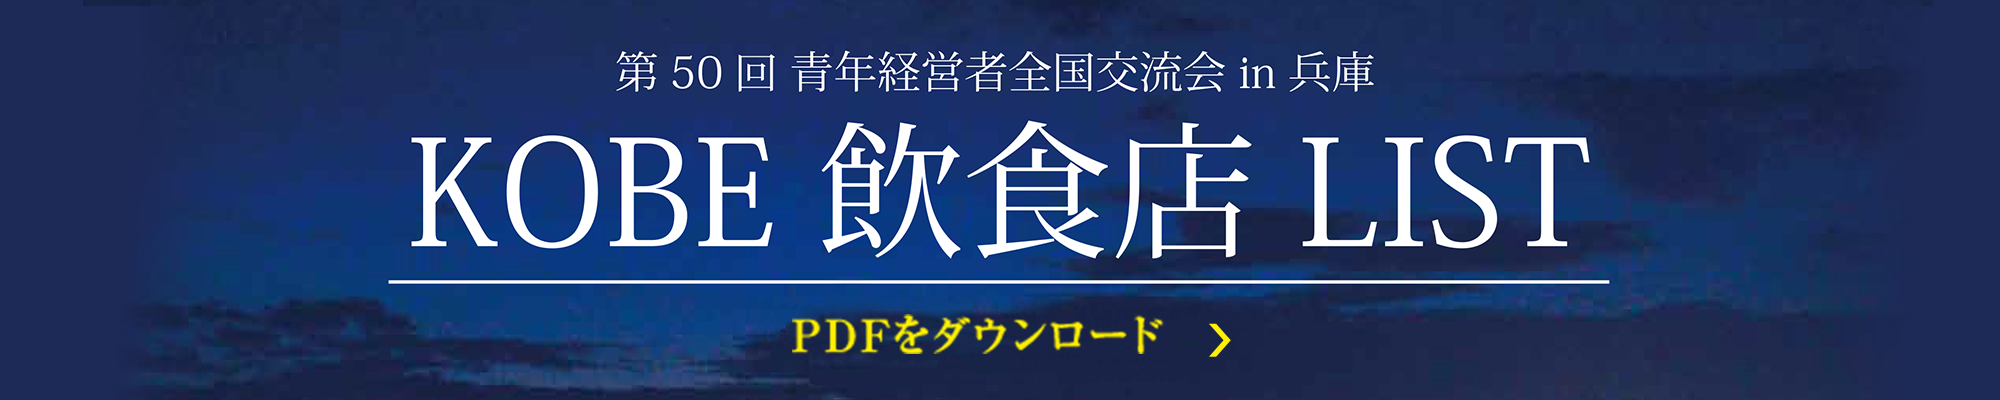 第50回 青年経営者全国交流会 in 兵庫 Kobe飲食店リスト PDFをダウンロード